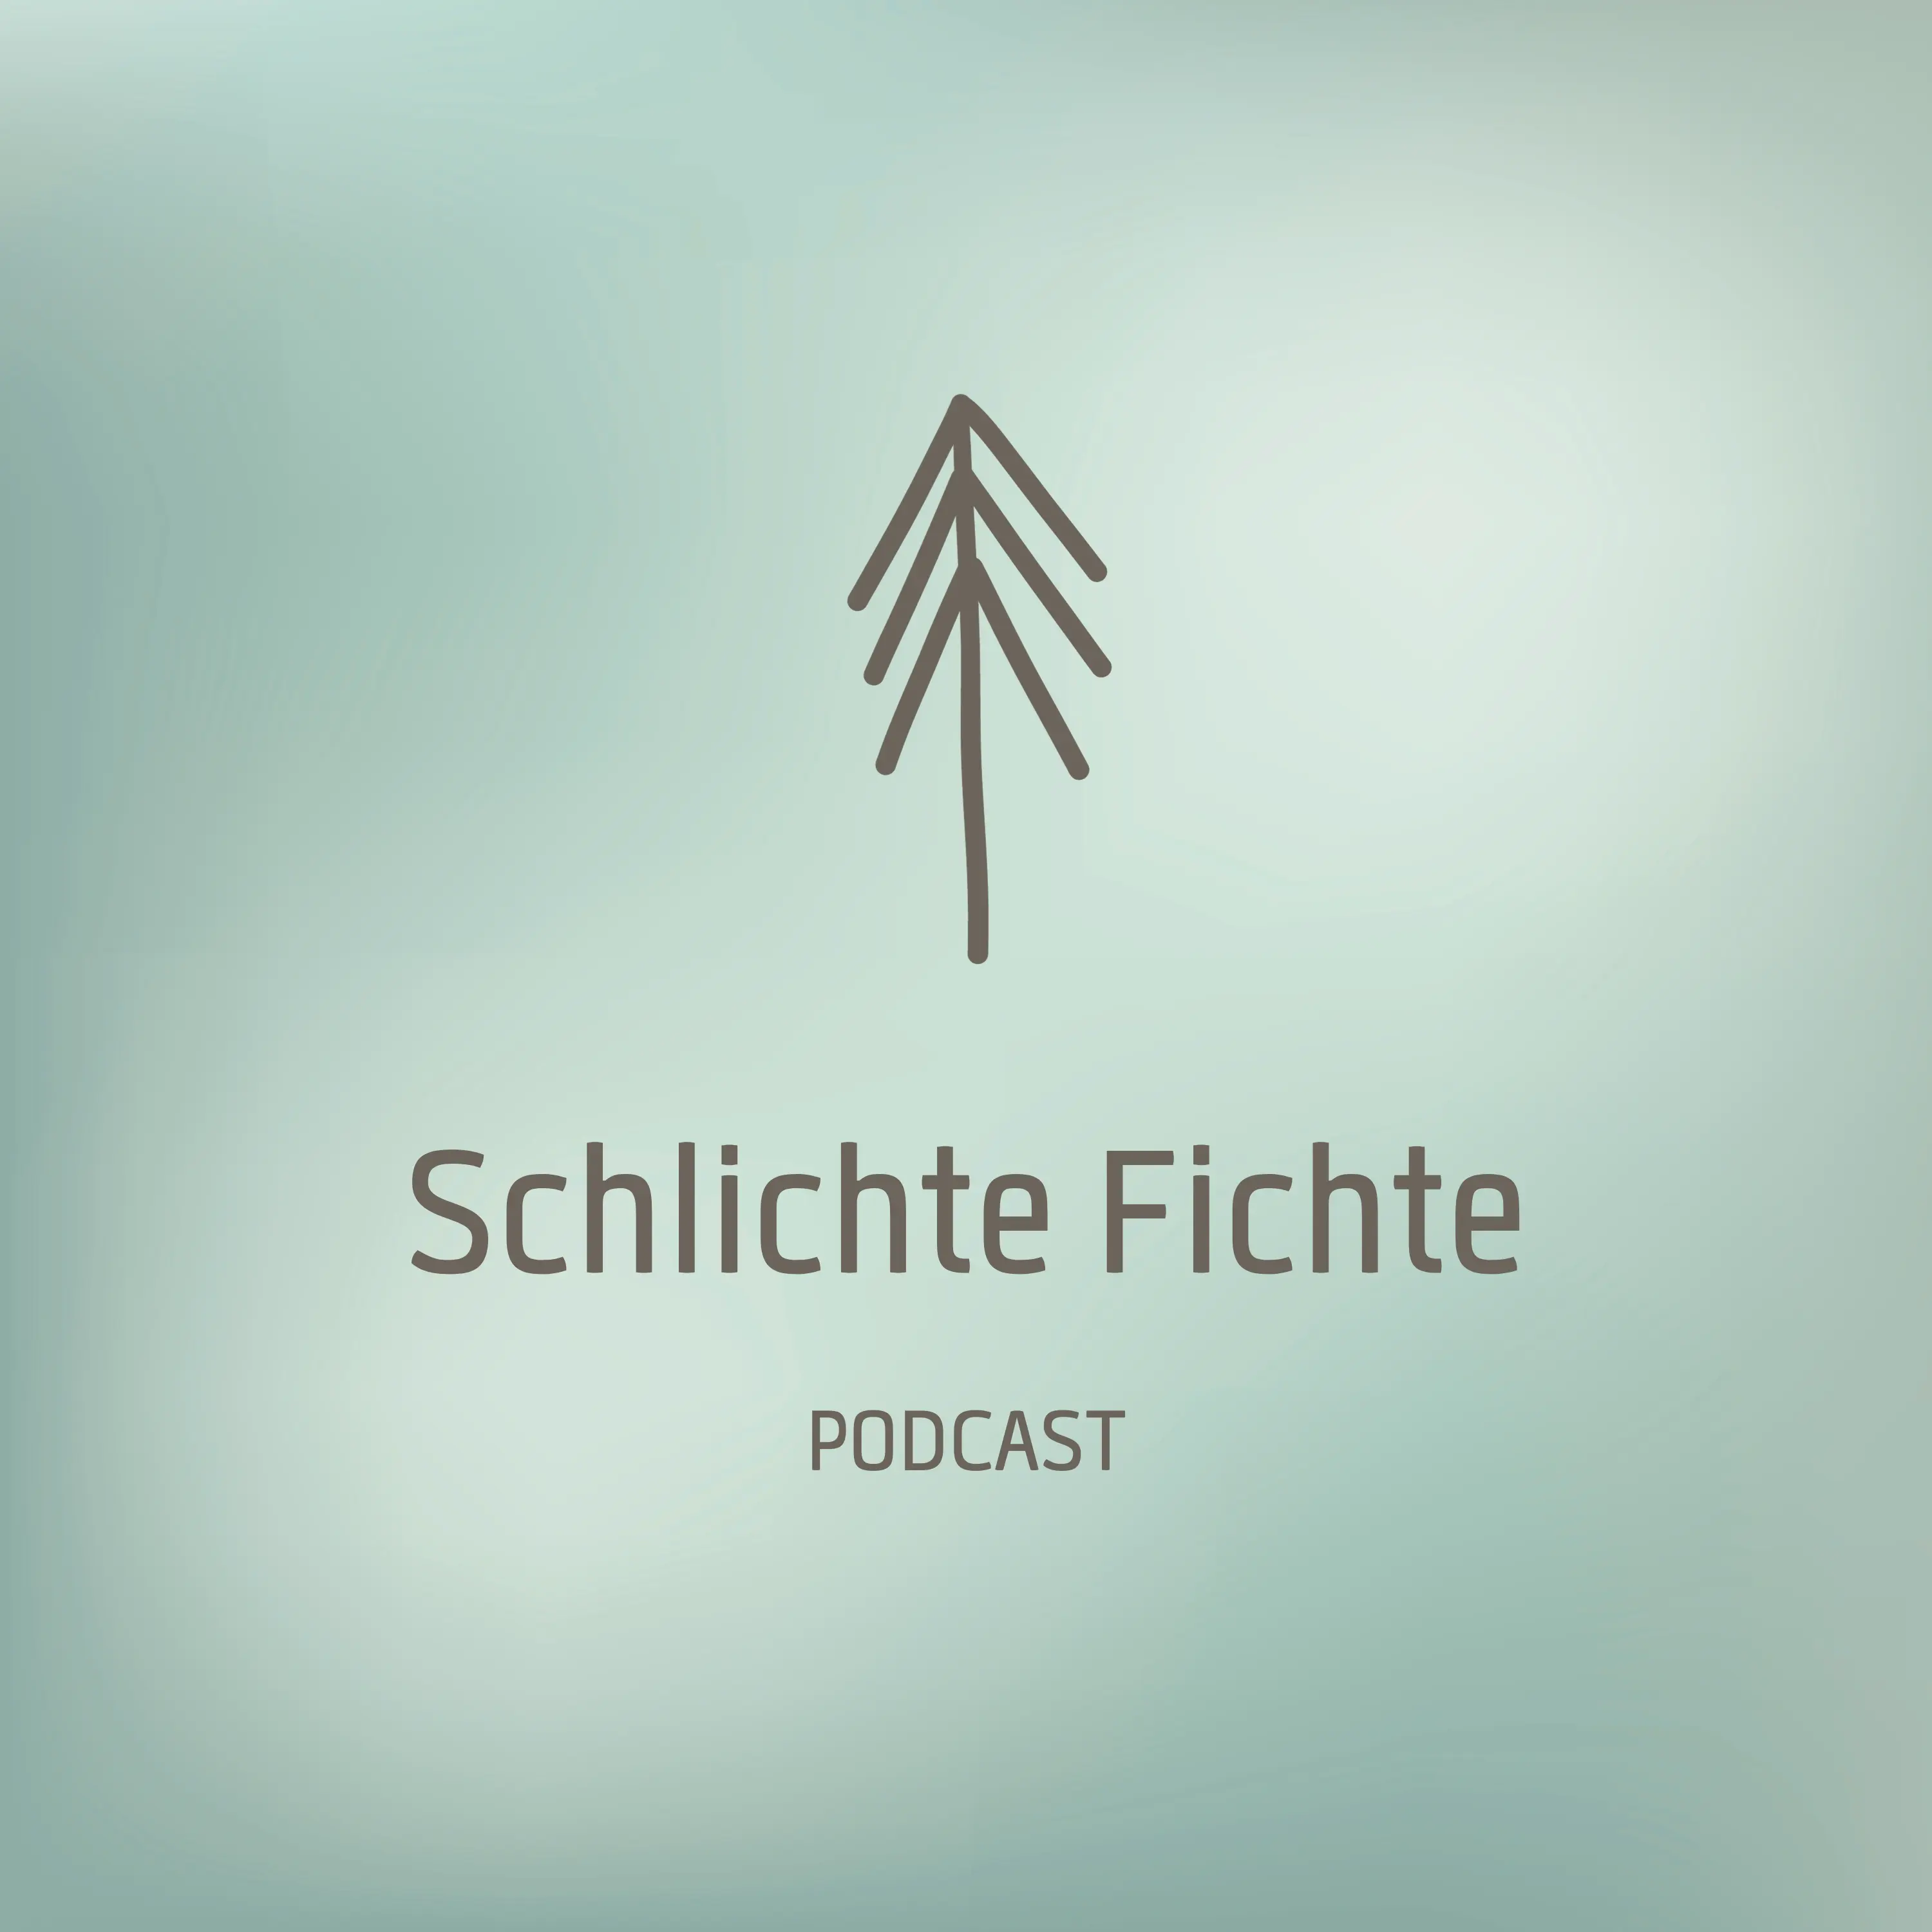 Podcast Schlichte Fichte